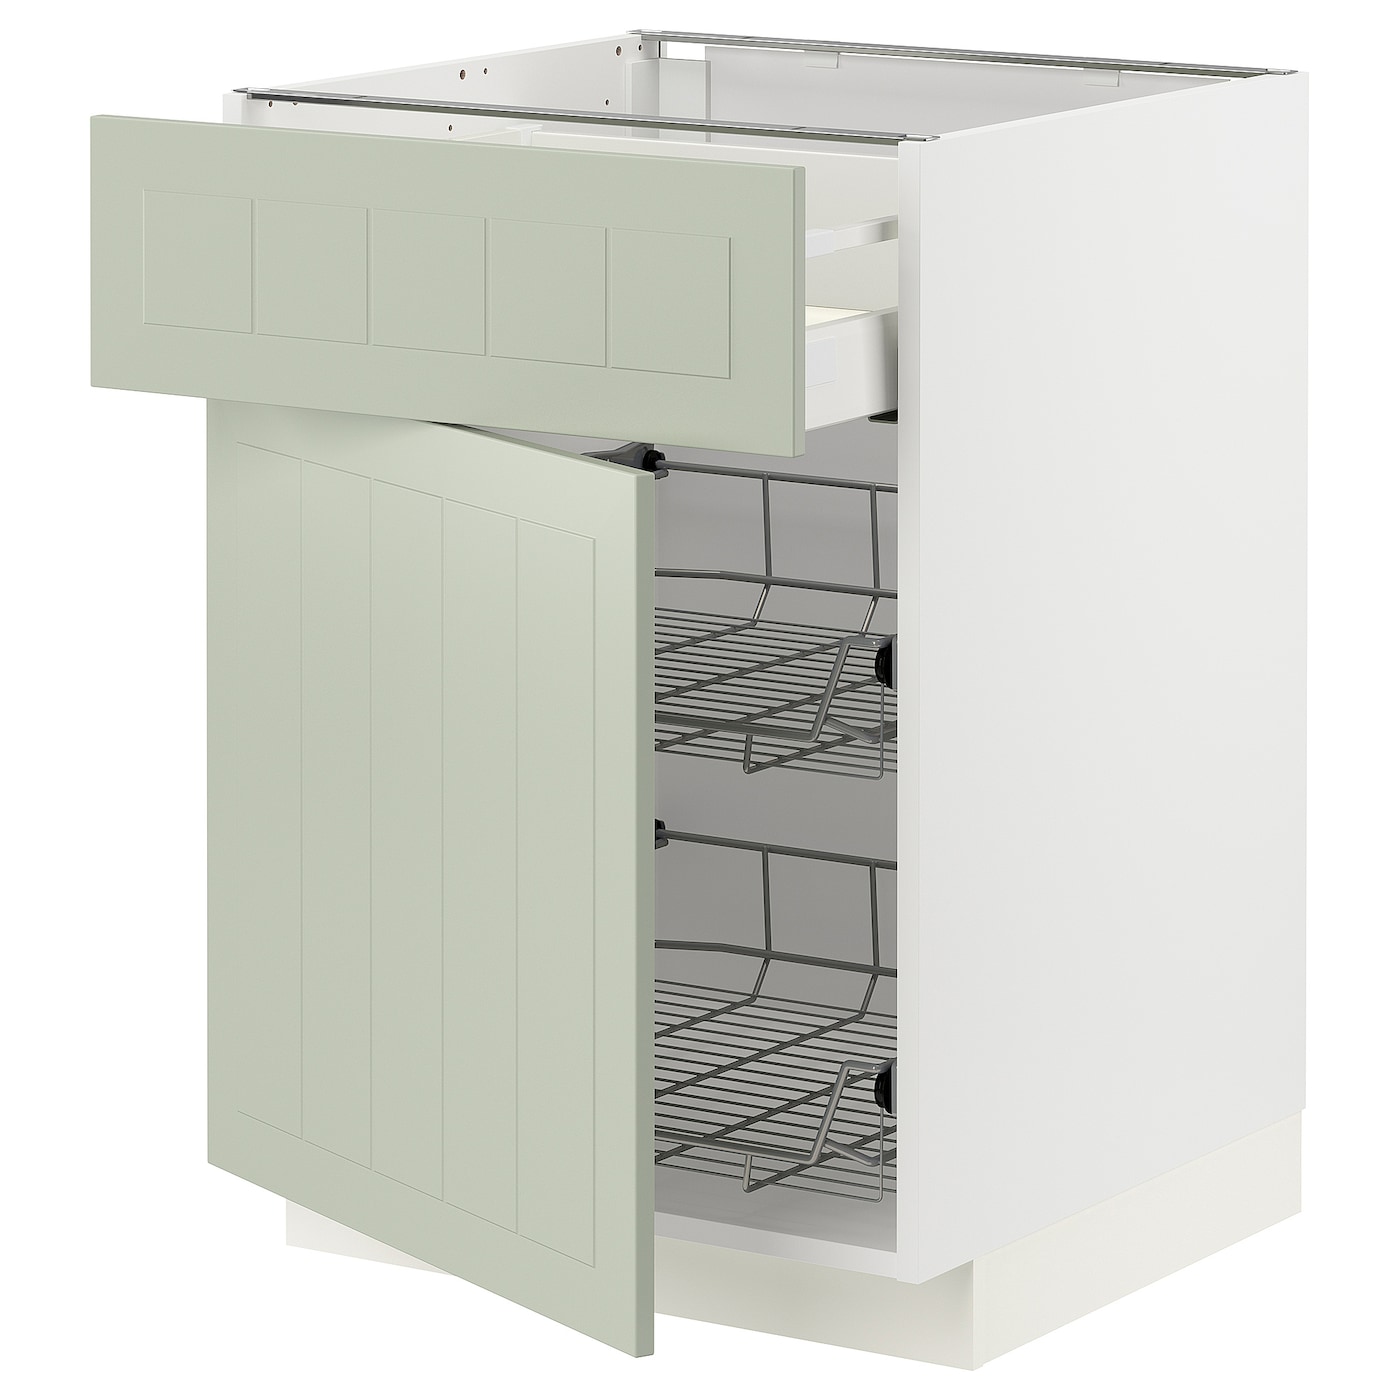 Напольный кухонный шкаф  - IKEA METOD MAXIMERA, 88x62x60см, белый/светло-зеленый, МЕТОД МАКСИМЕРА ИКЕА